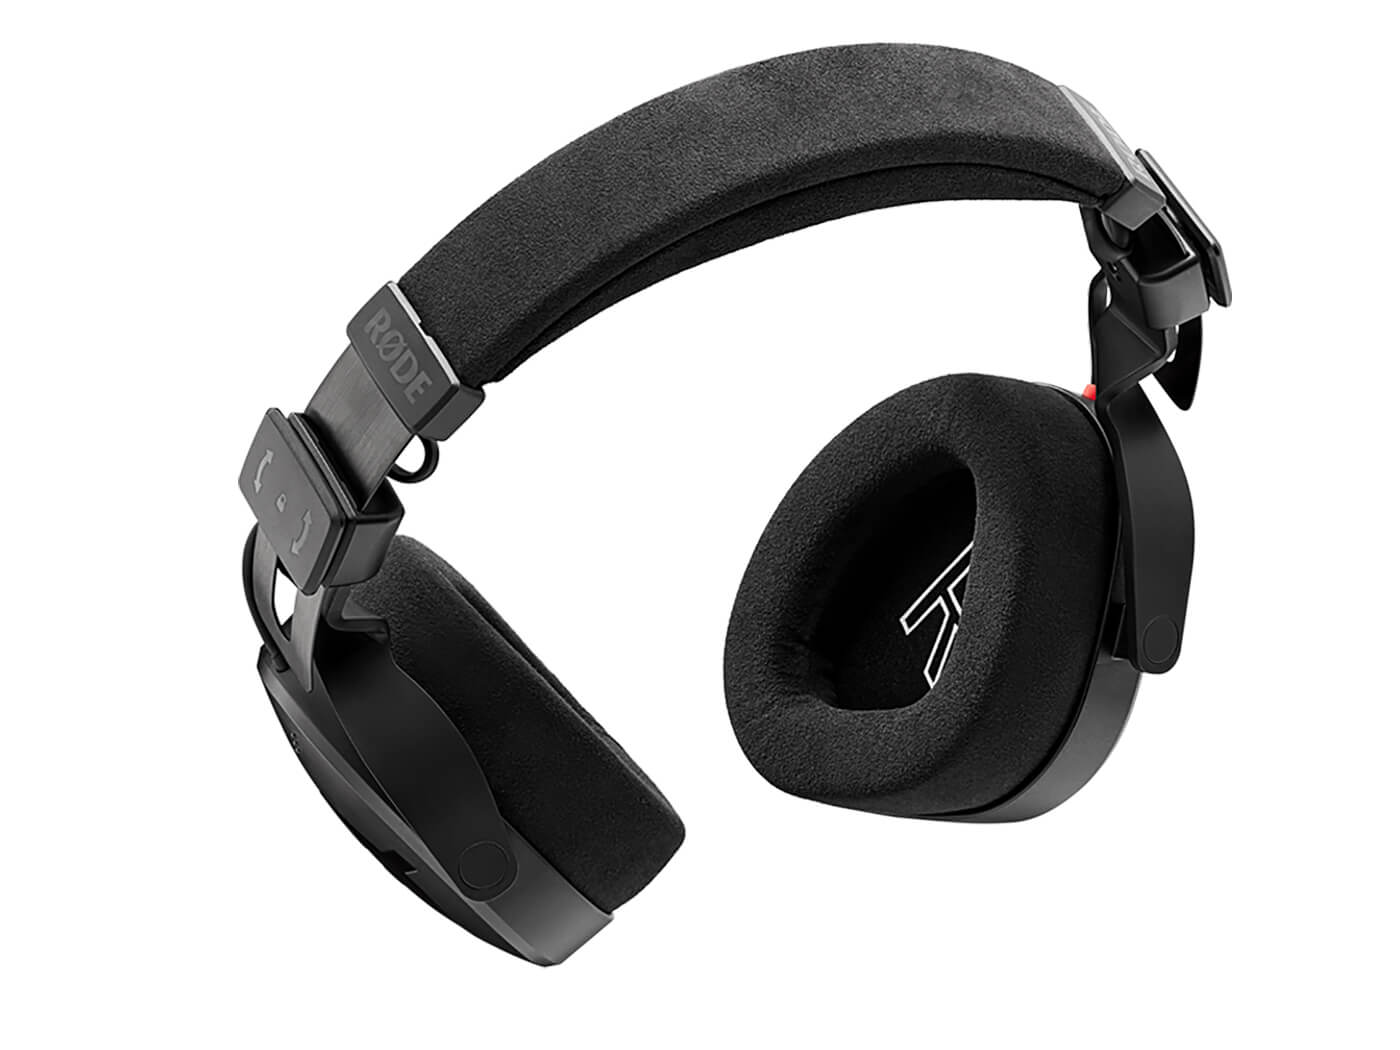 RØDE NTH-100 headphones review: RØDE's debut headphones deliver ...